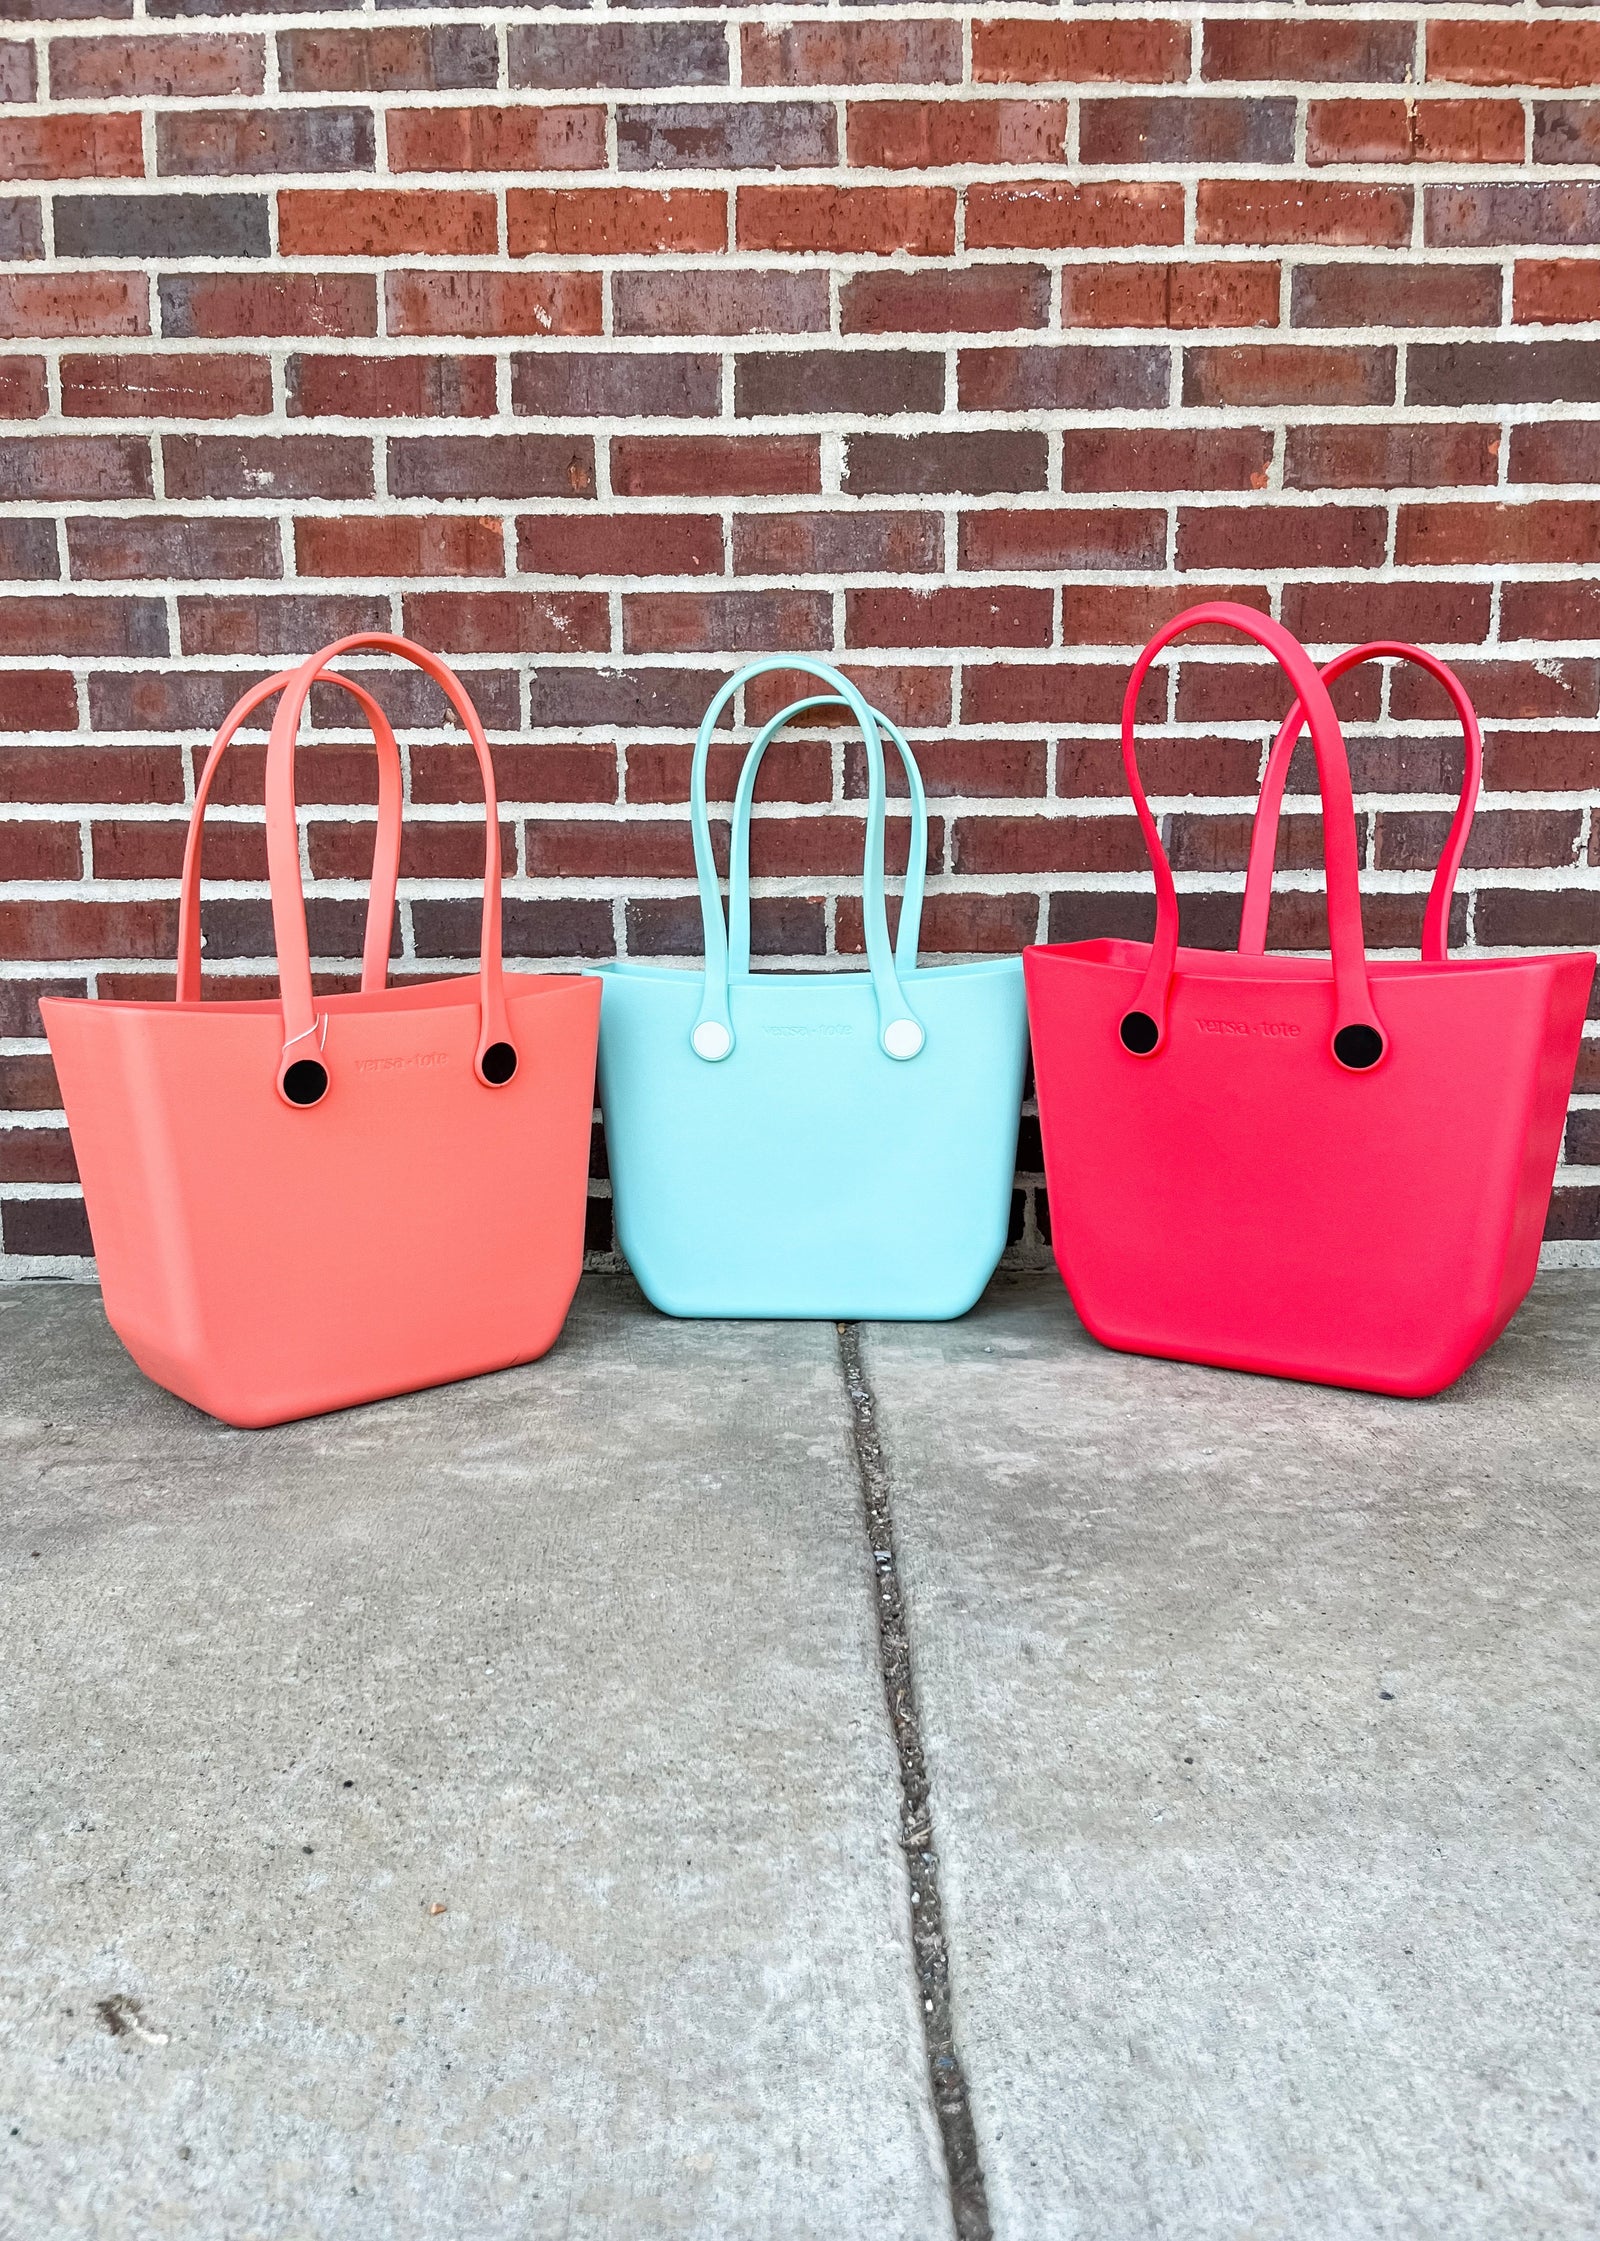 Cute Purses - Cute Handbags | The Mint Julep Boutique – Shop the Mint